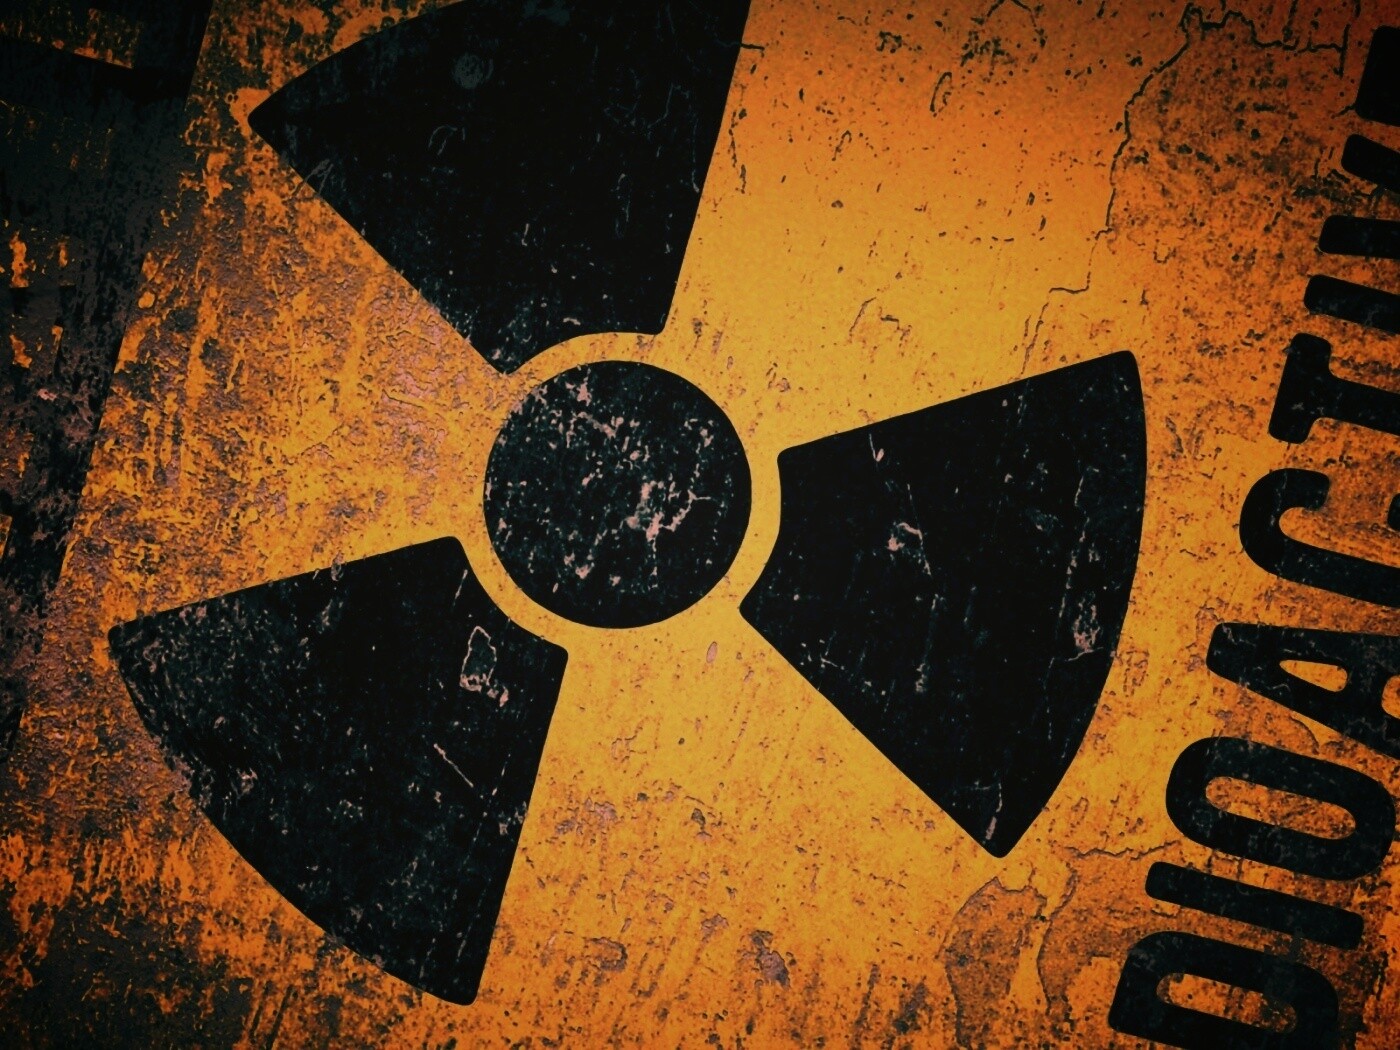 Radioactive taken 2005